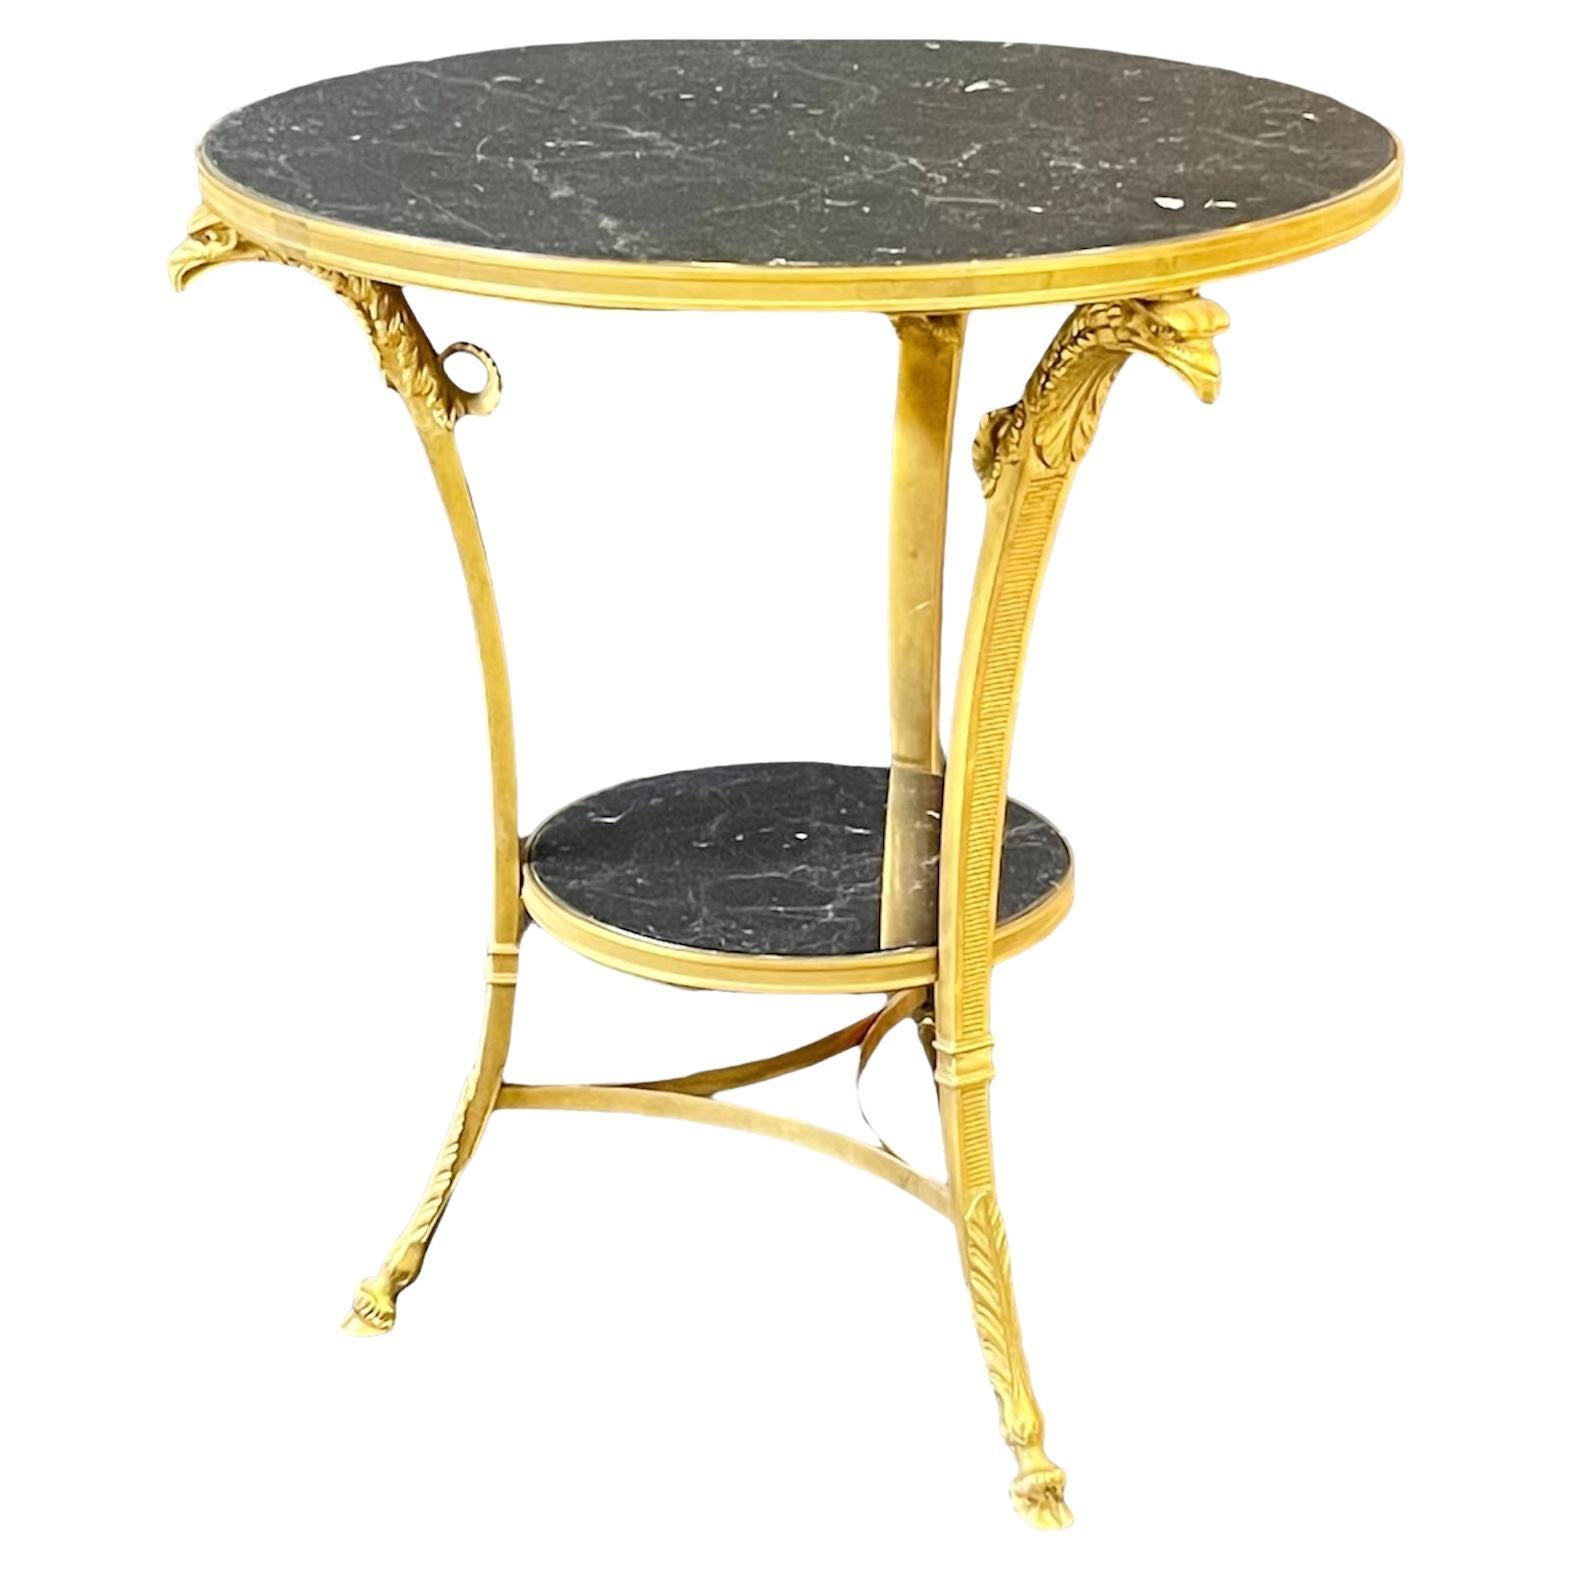 Très belle table guéridon de style Empire français du début du XXe siècle en bronze doré et marbre. Un plateau circulaire en marbre noir veiné de blanc est maintenu par un bandeau décoratif nervuré. Le cadre en bronze doré est composé de trois pieds